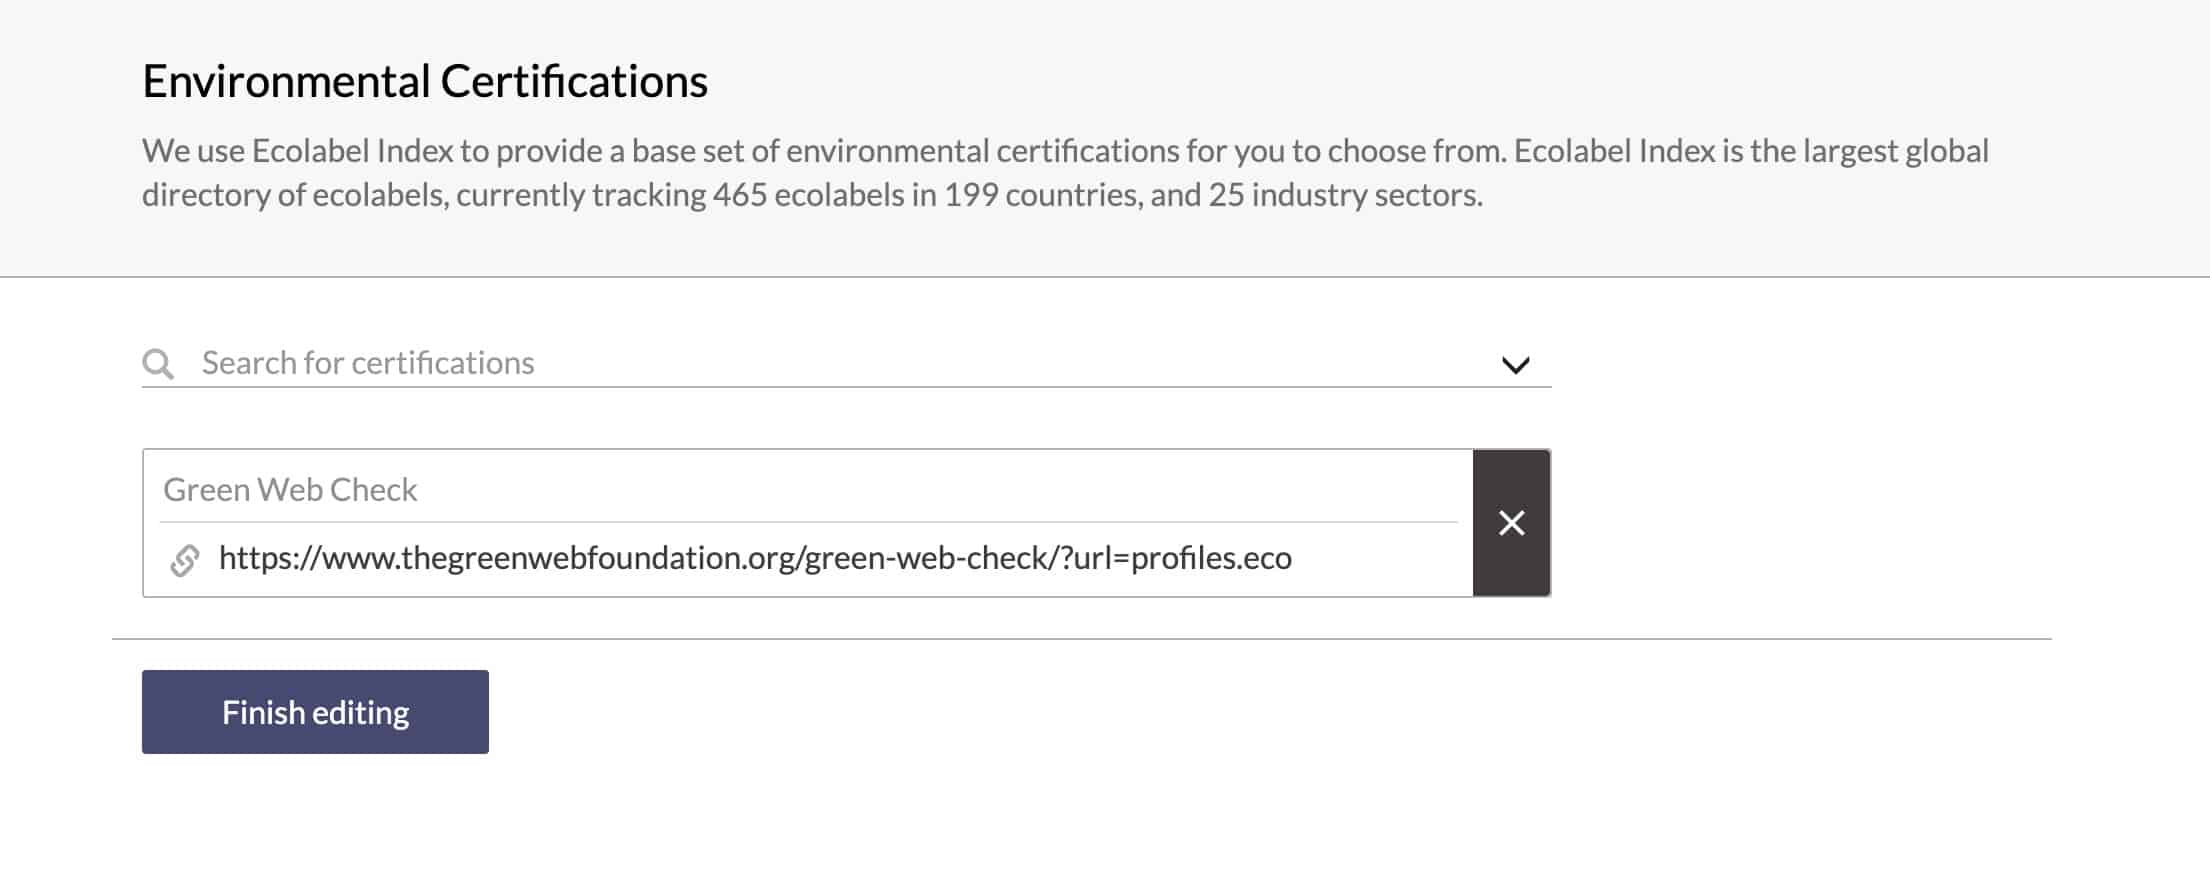 Adding Green Web Check to .eco profile